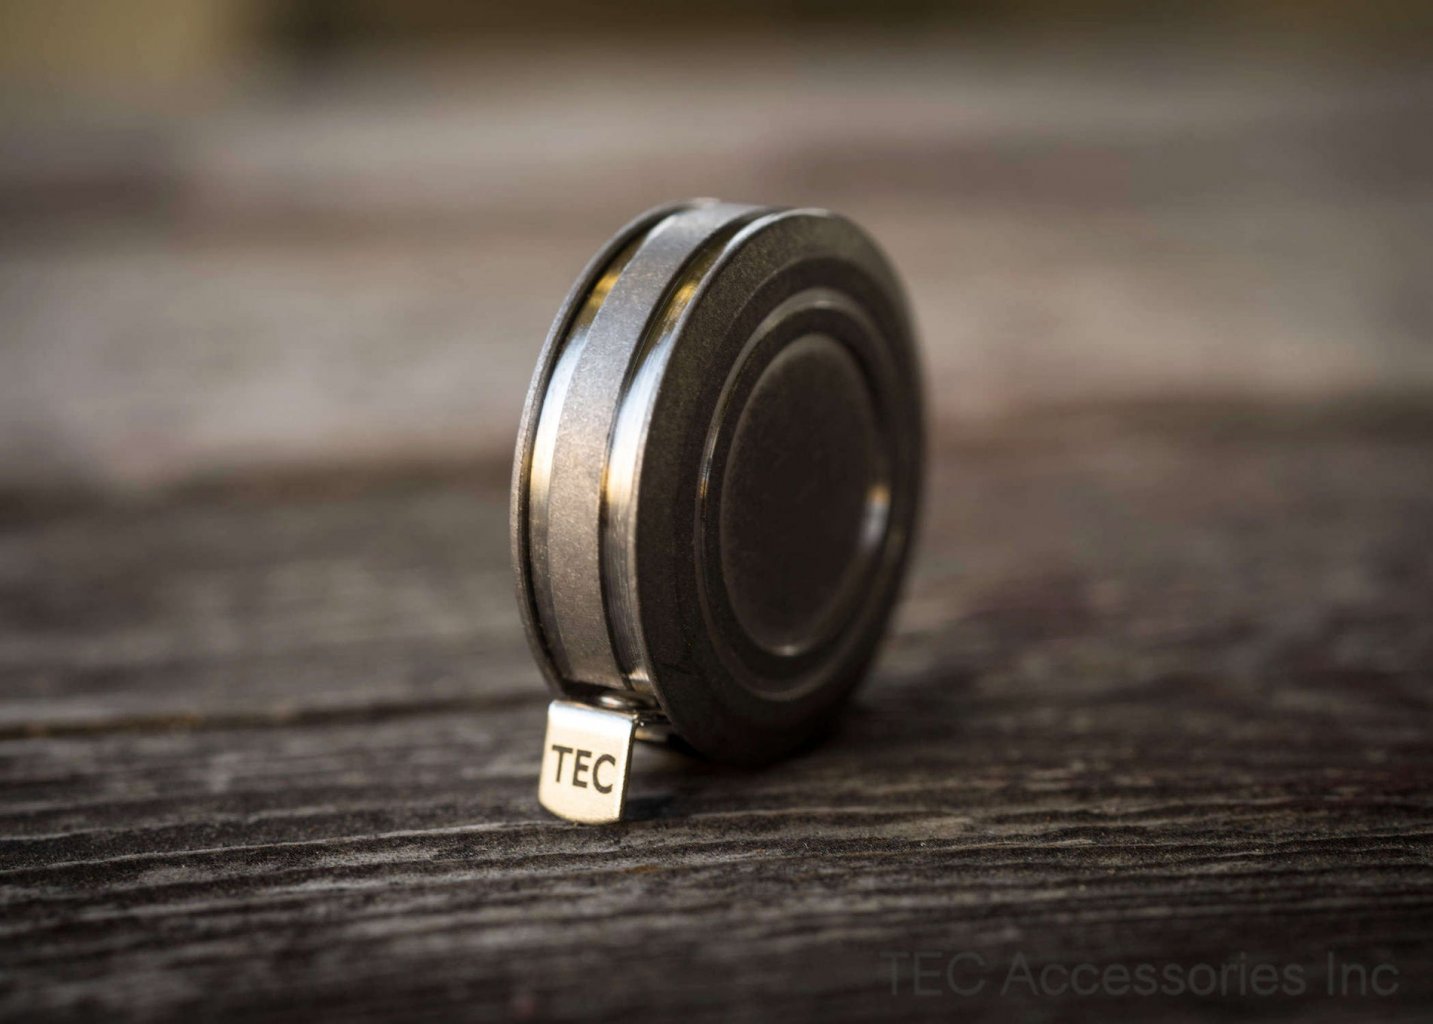 Tec Accessories Ti-Tape Titanium Tape Measure – The smallest titanium tape measure in the world